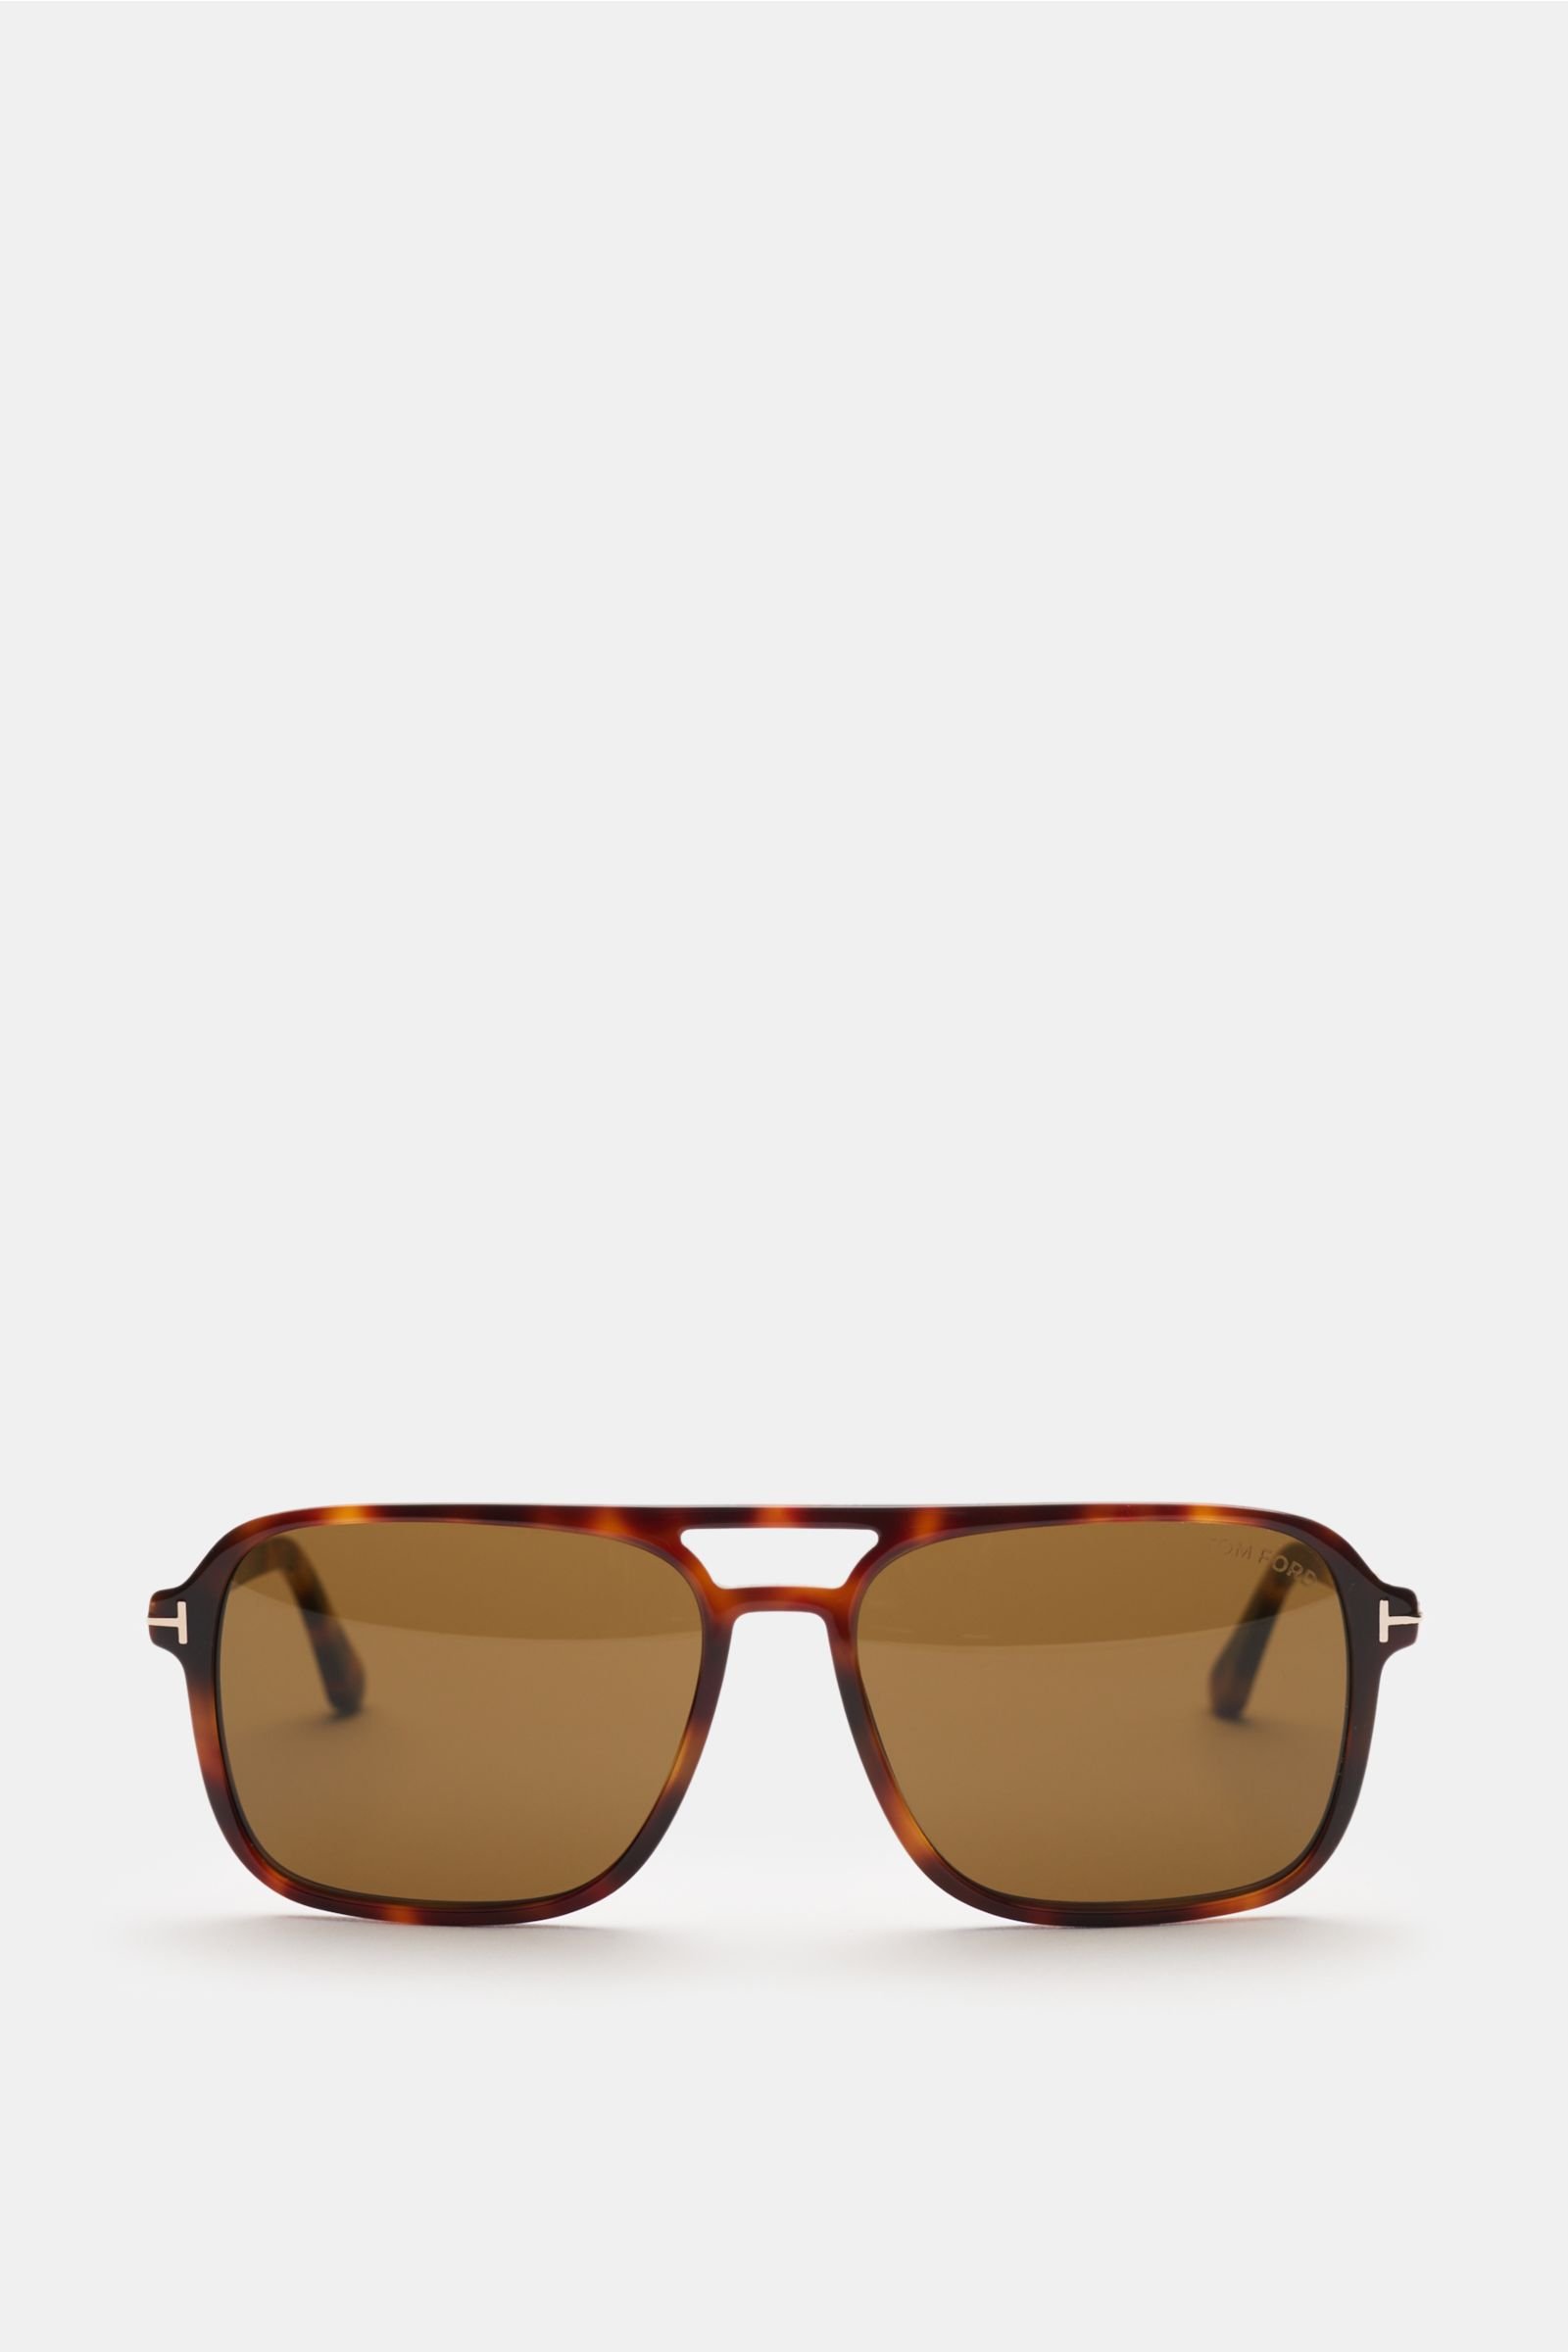 Sunglasses 'Crosby' dark brown patterned/brown